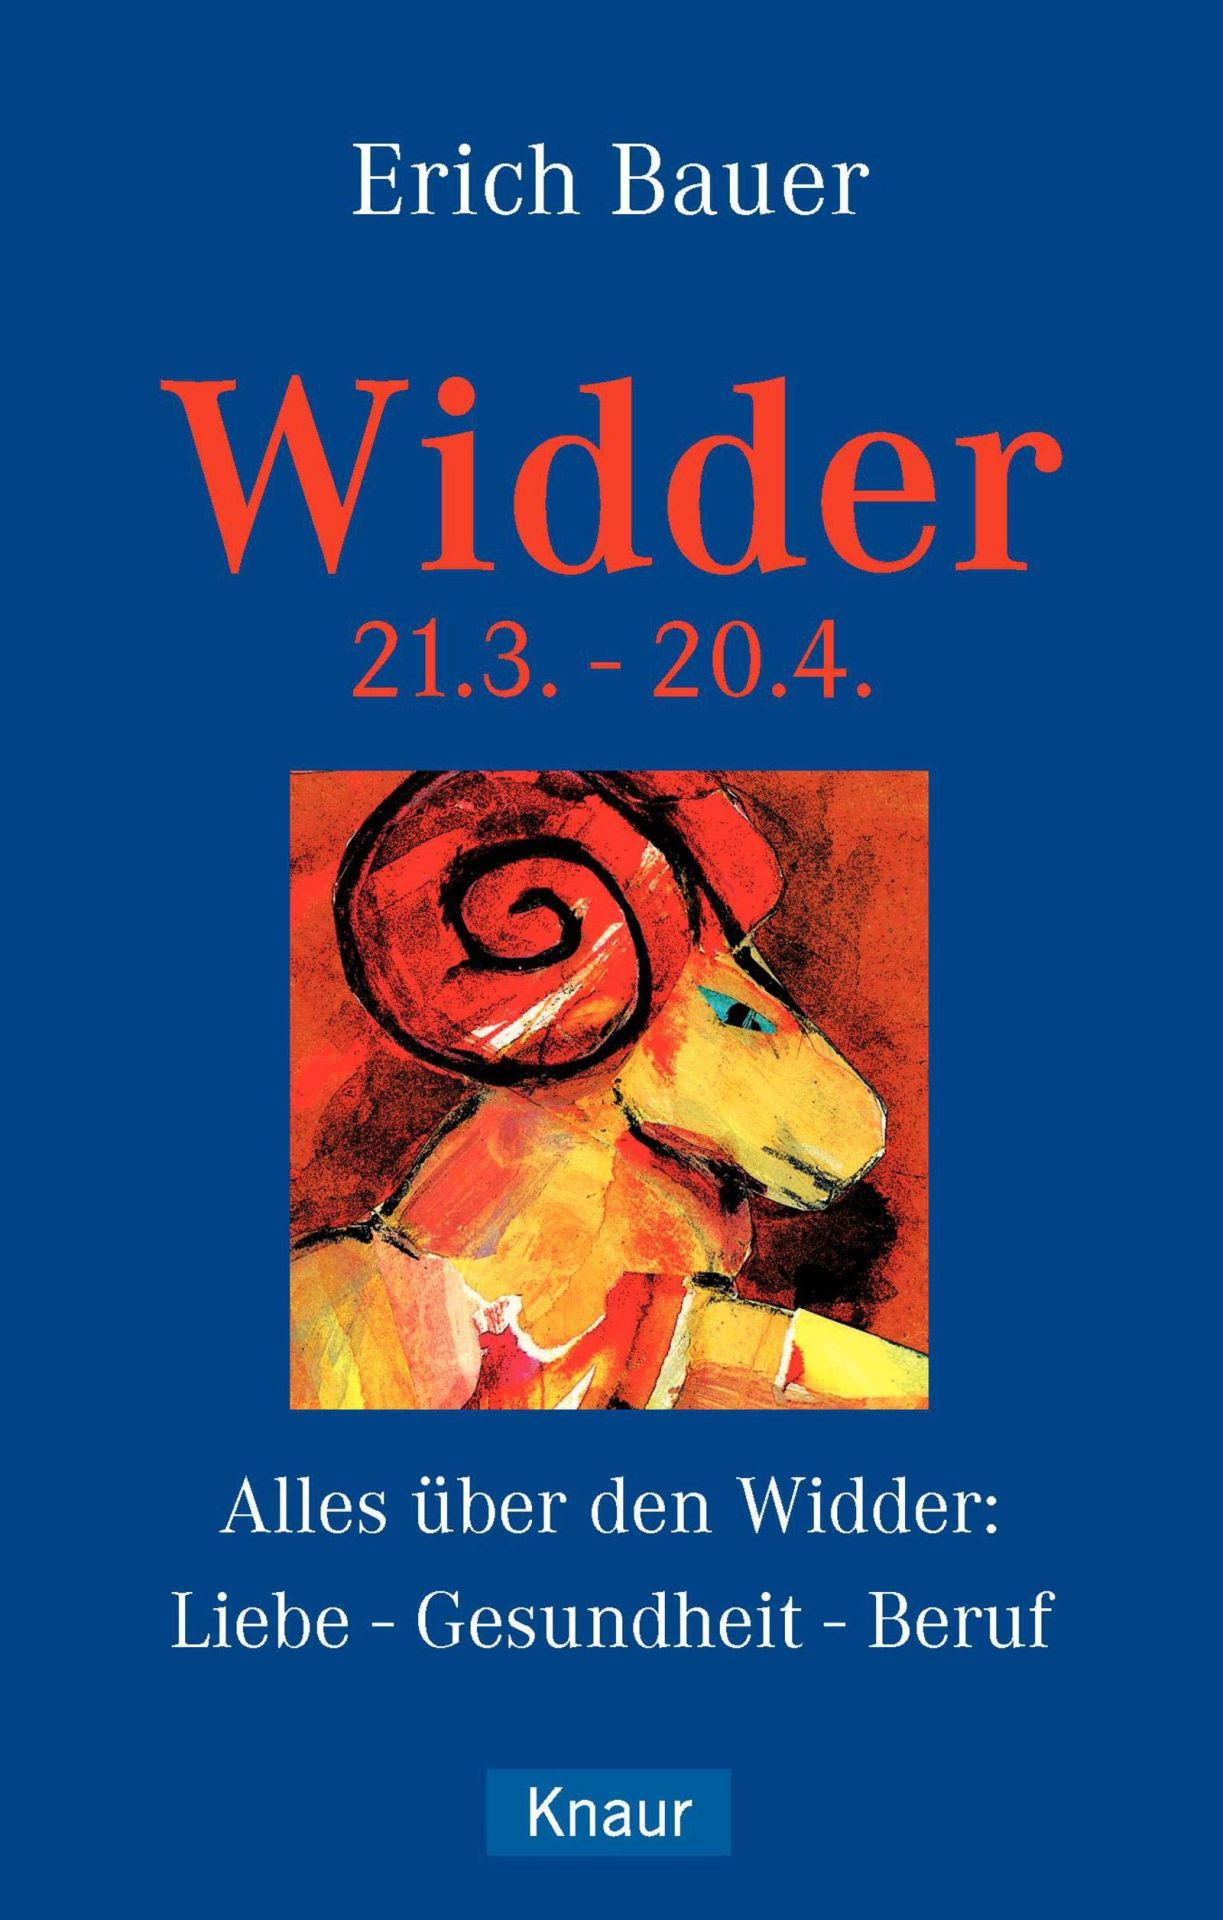 Das Astro-Handbuch; Teil: Widder : 21.3. - 20.4. Knaur ; 77542 - Bauer, Erich